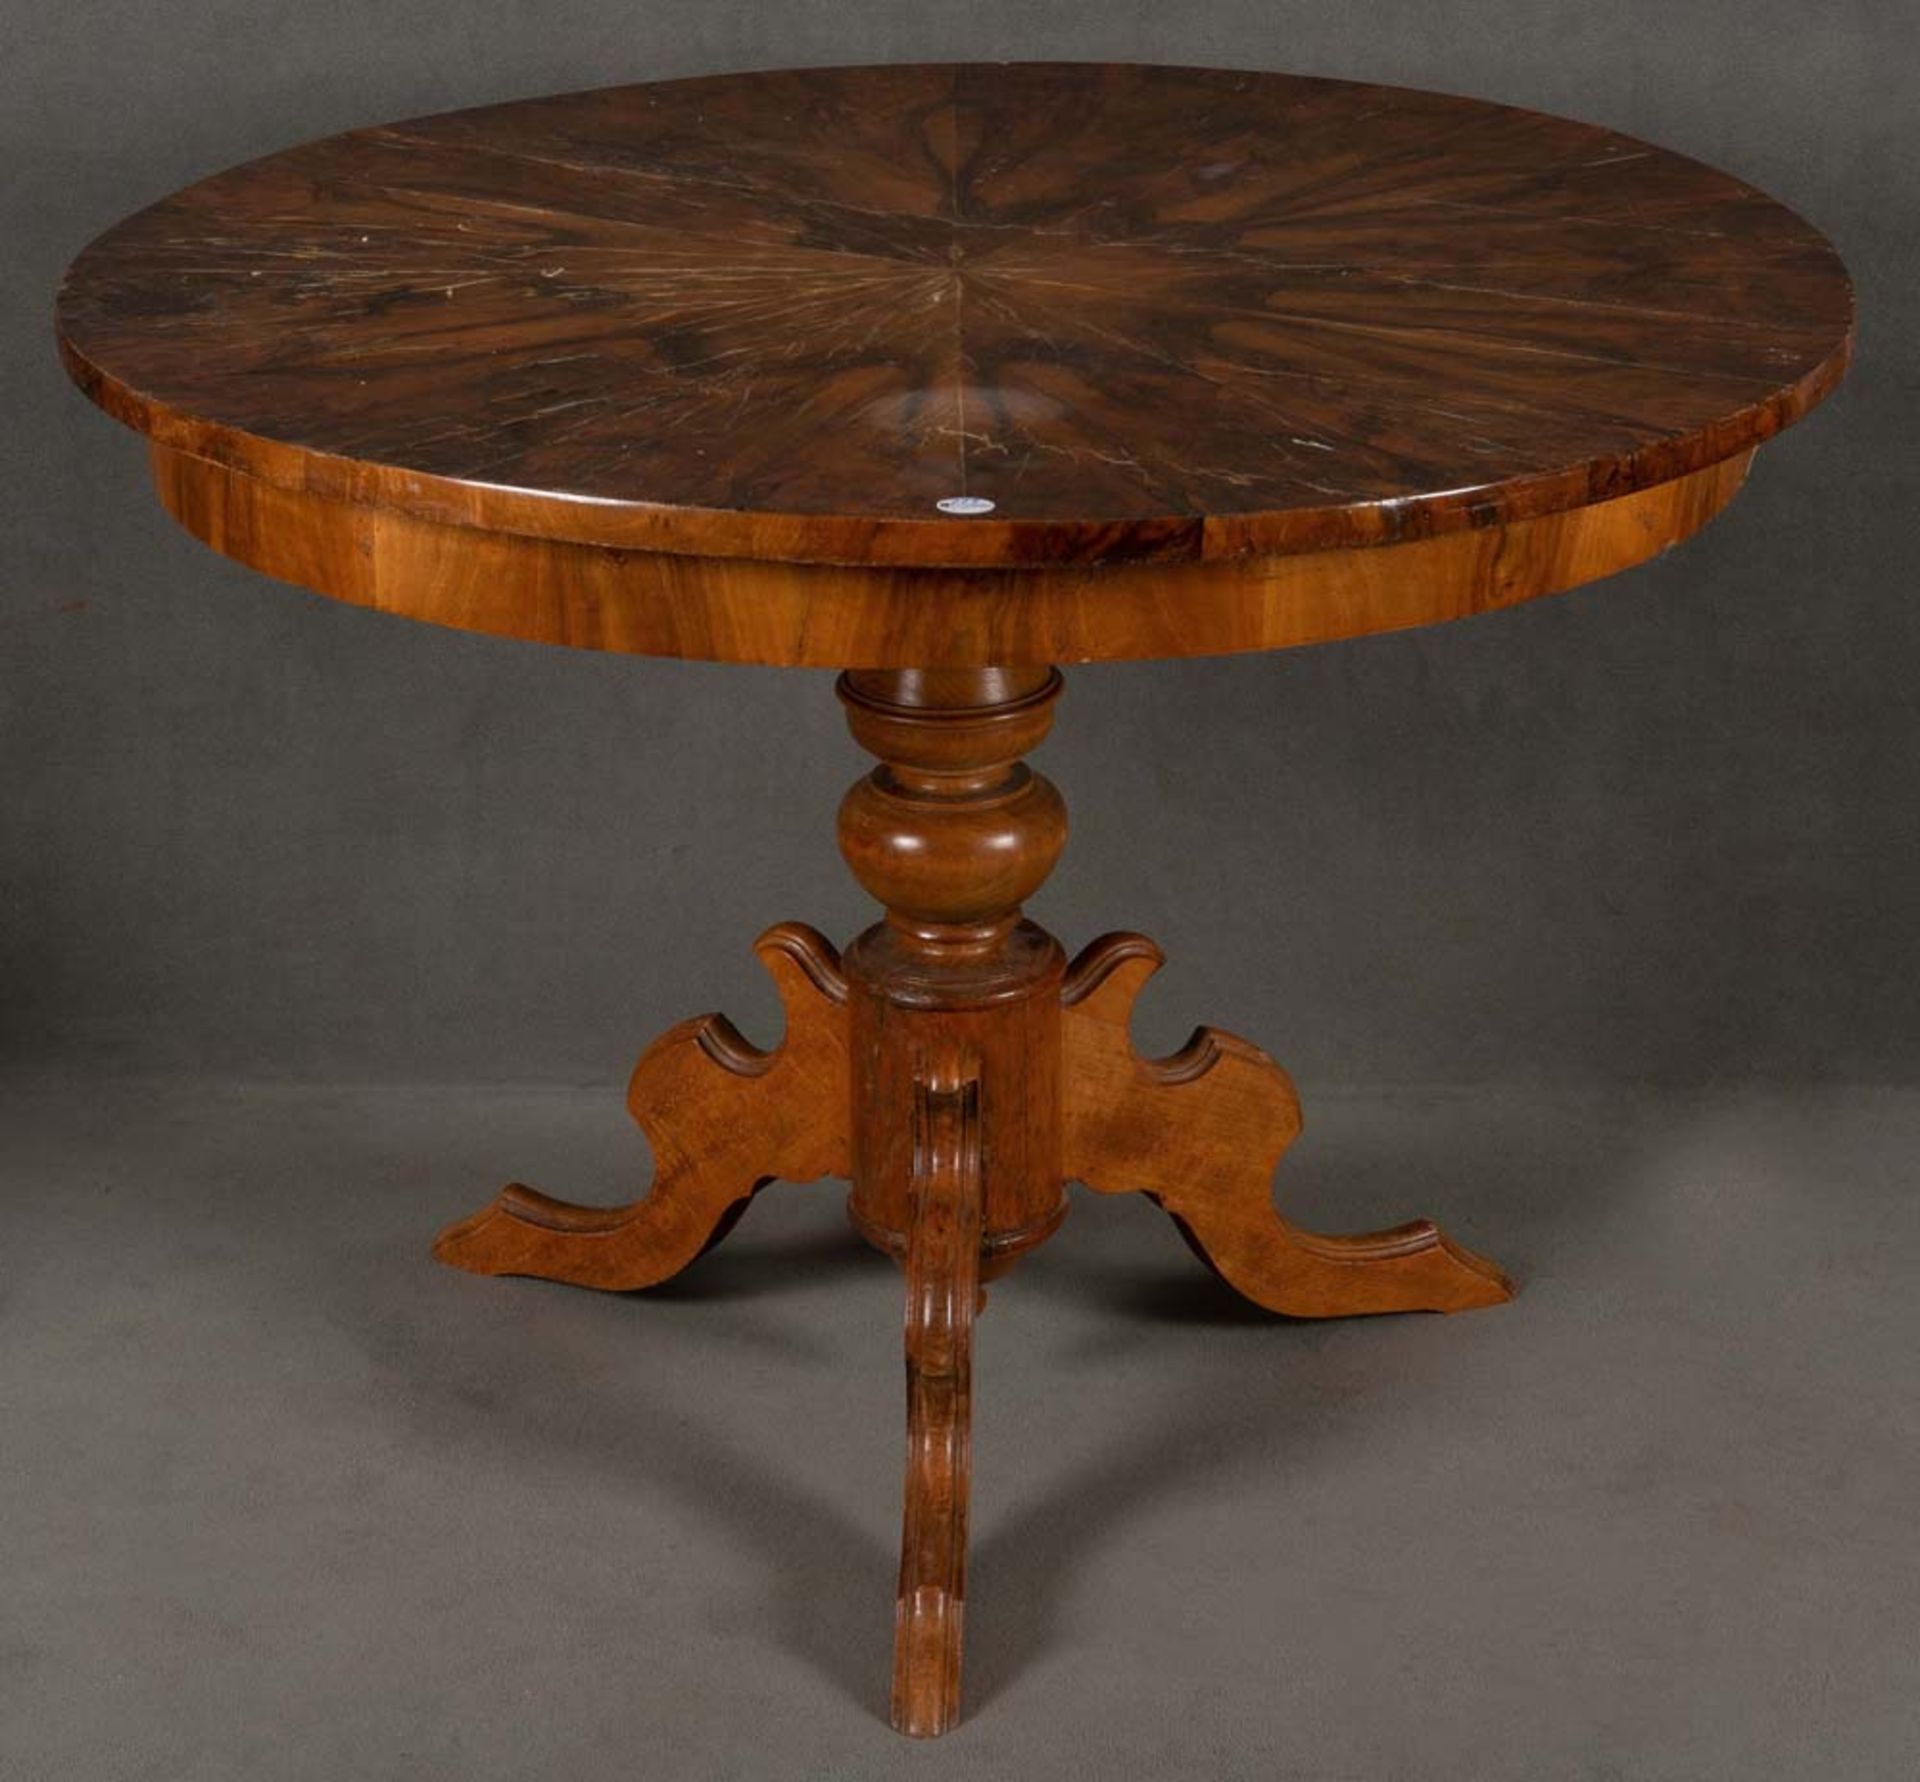 Runder Louis Philippe-Tisch. Deutsch 19. Jh. Nussbaum, furniert, teilw. massiv, H=79 cm, D=105